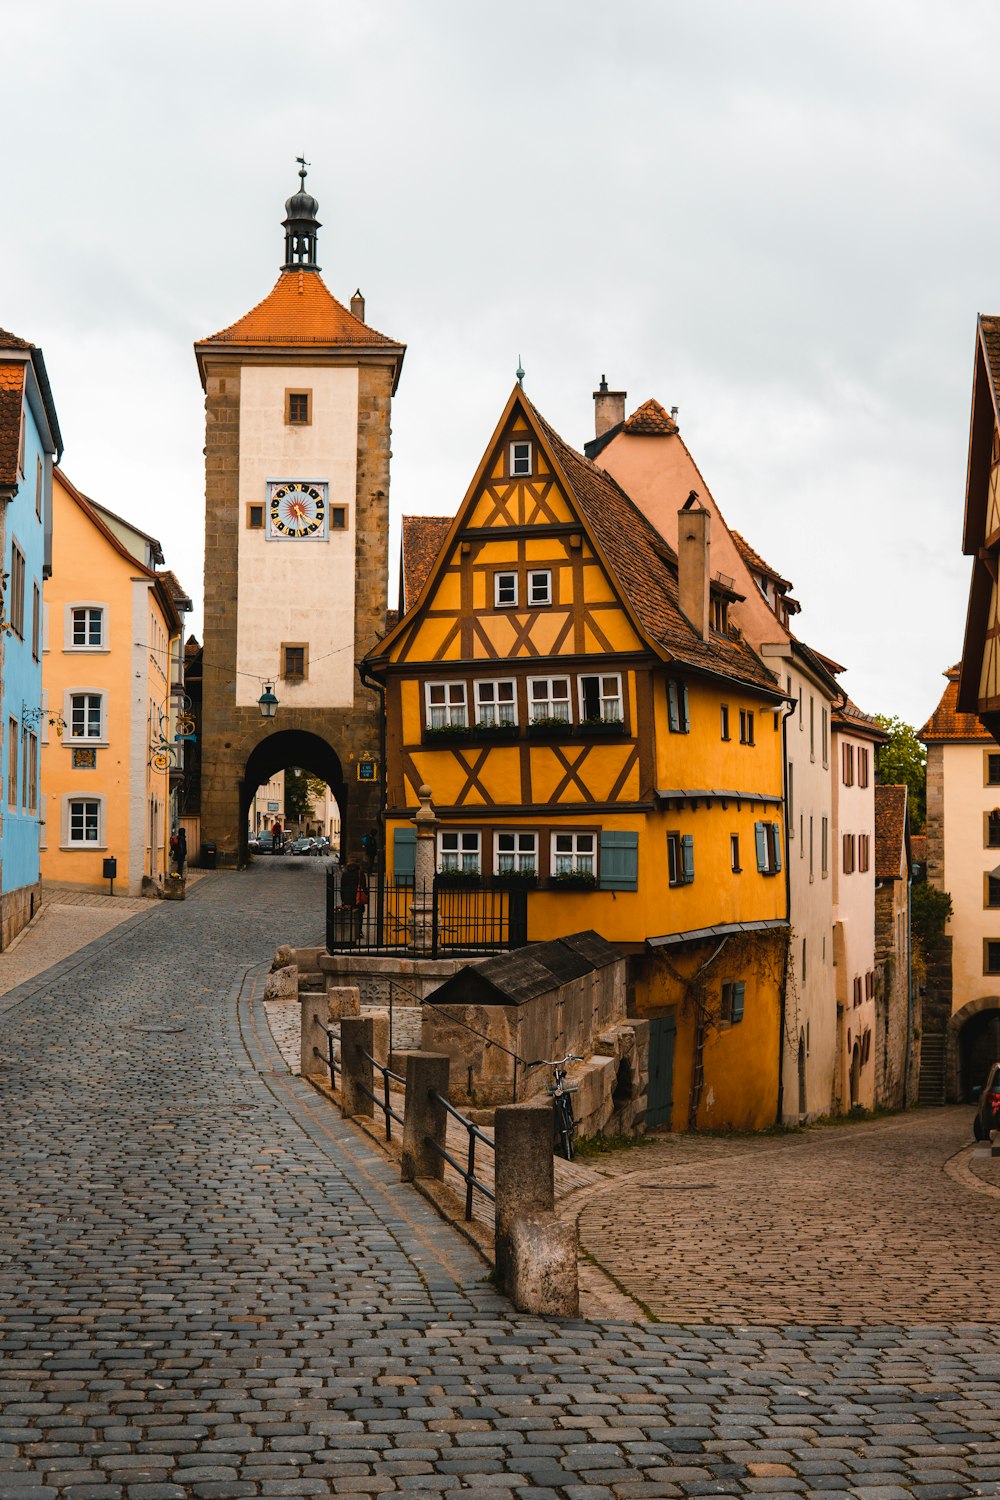 Una strada di ciottoli con un edificio giallo e una torre dell'orologio sullo sfondo